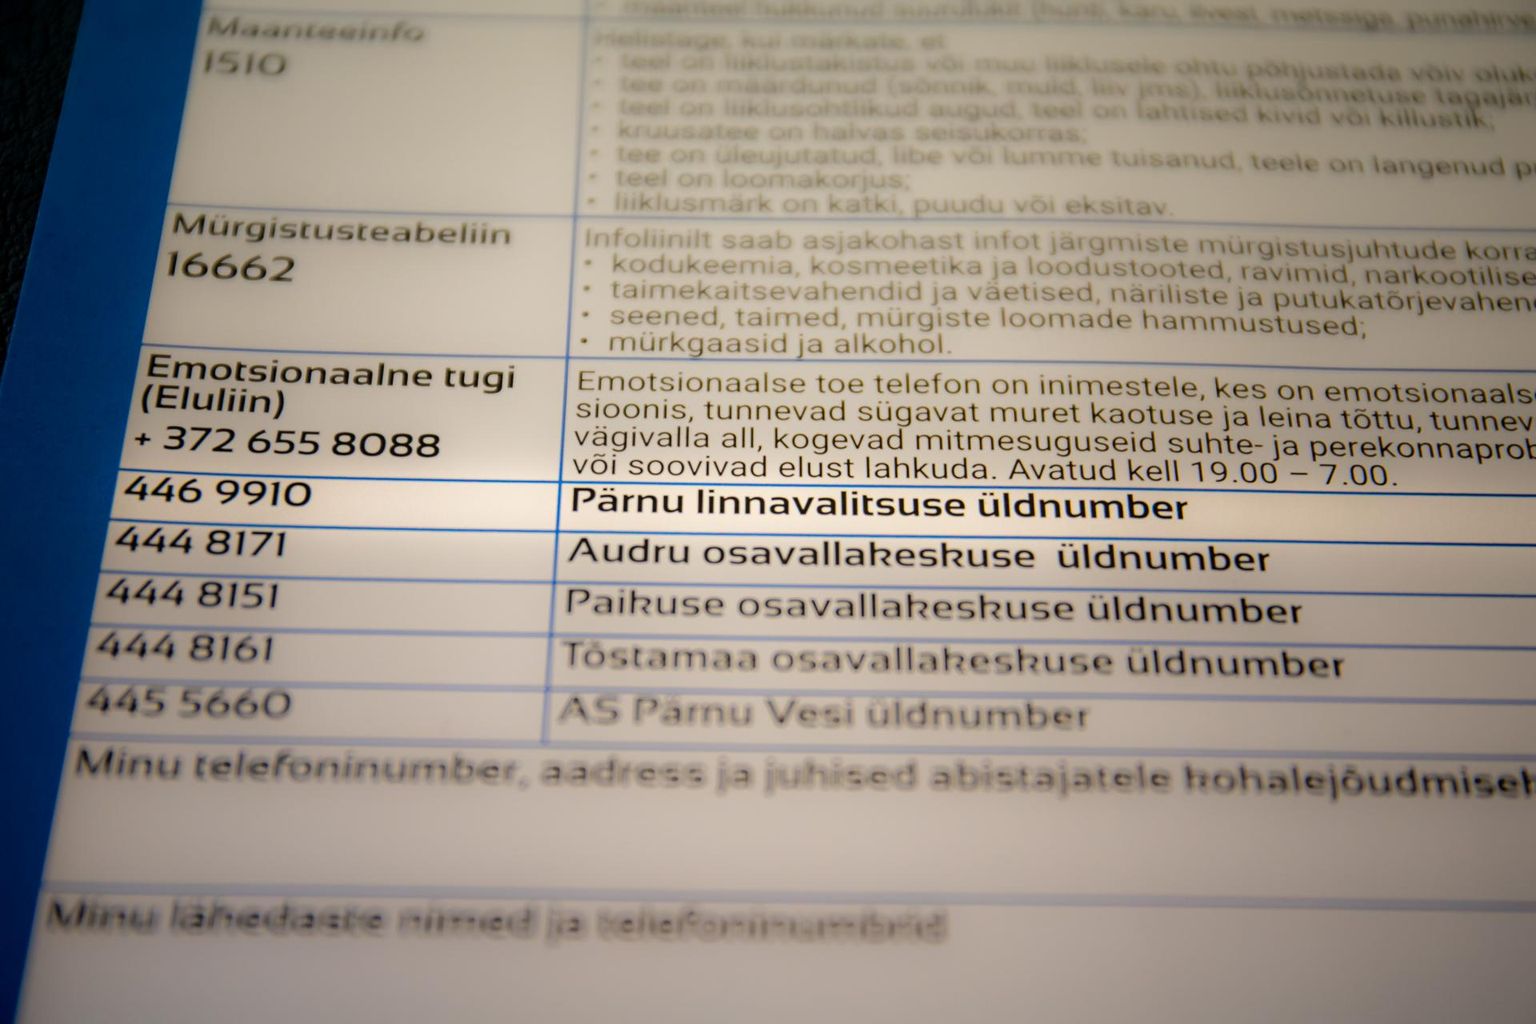 Trükises kirjas olev Pärnu linnavalitsuse telefoninumber on Kihnu vallavalitsuse oma, linnavalitsuse infolaua õige number on 444 8200. 